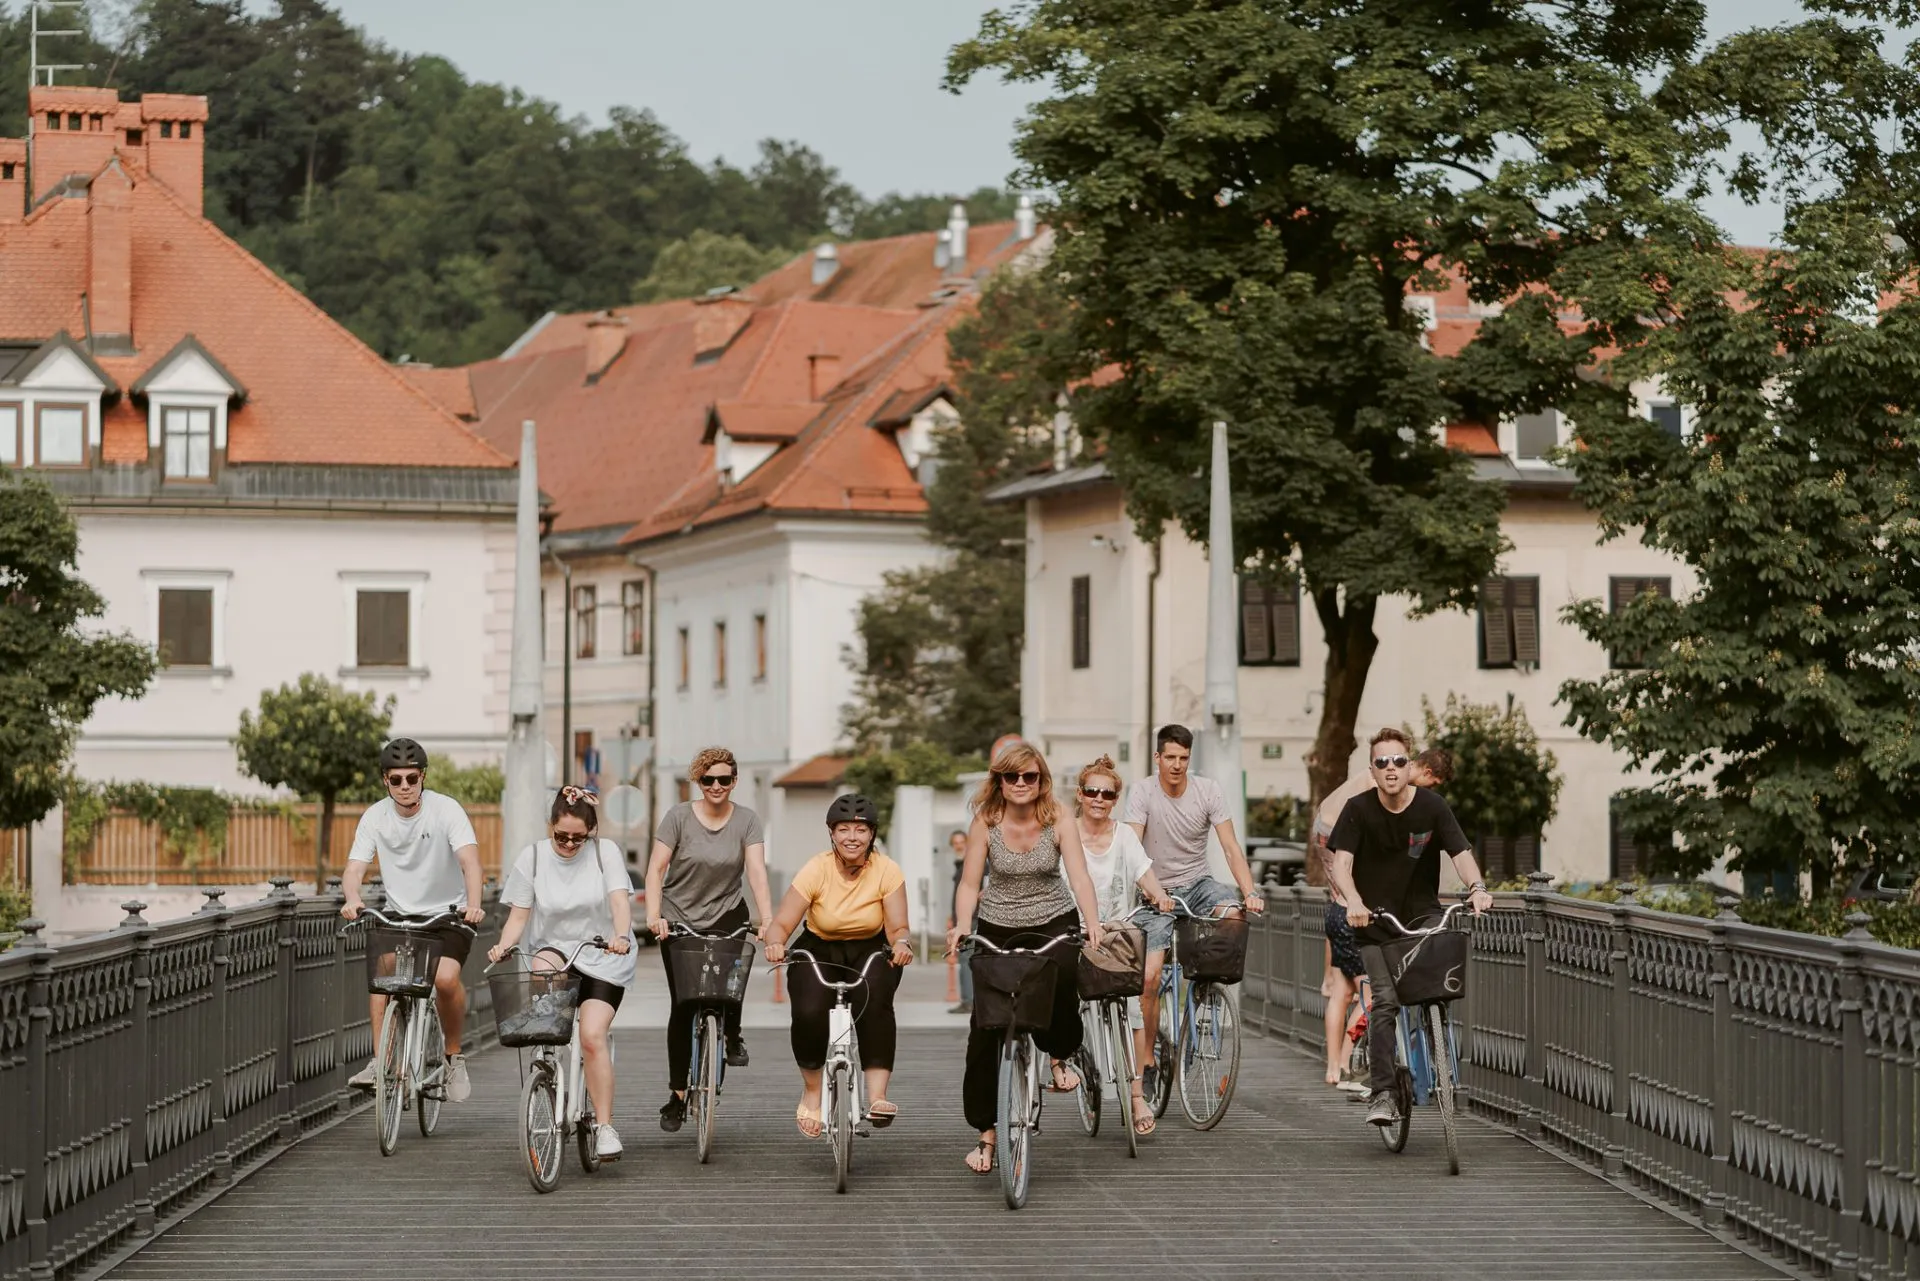 Ljubljanas broar på cykel skalade 1